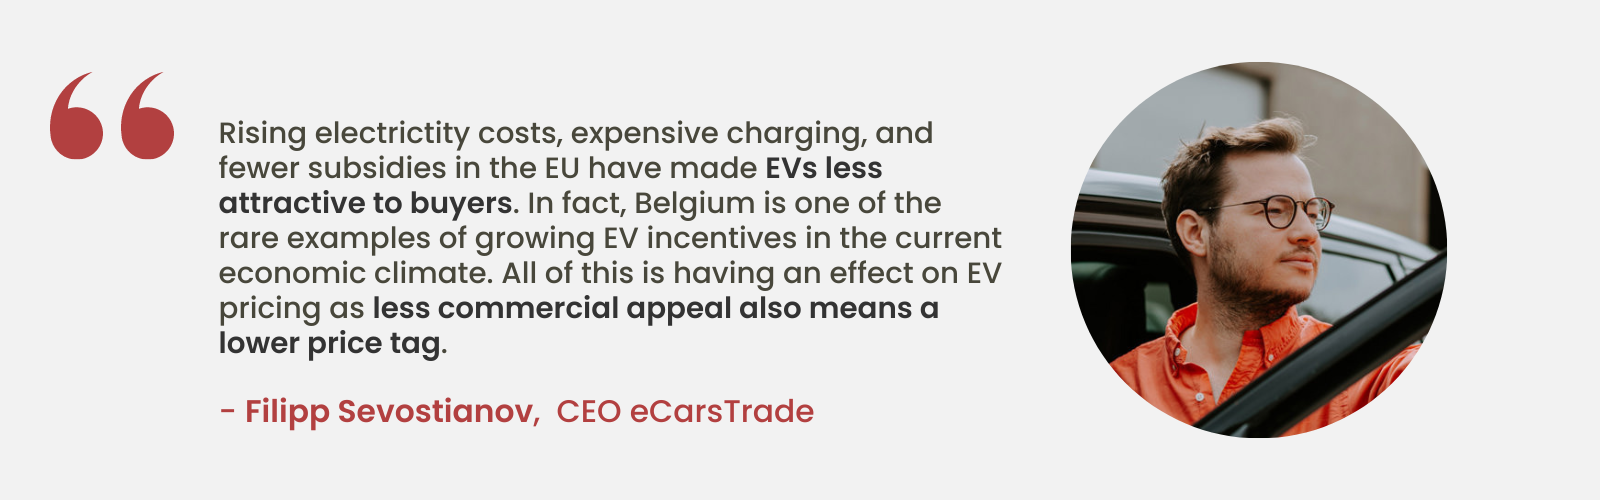 Perspectivă expertă de la Filipp Sevostianov, CEO al eCarsTrade, cu privire la scăderea atractivității vehiculelor electrice din cauza costurilor în creștere și a mai puține subvenții în UE, evidențiind poziția unică a Belgiei cu stimulente în creștere pentru vehicule electrice.